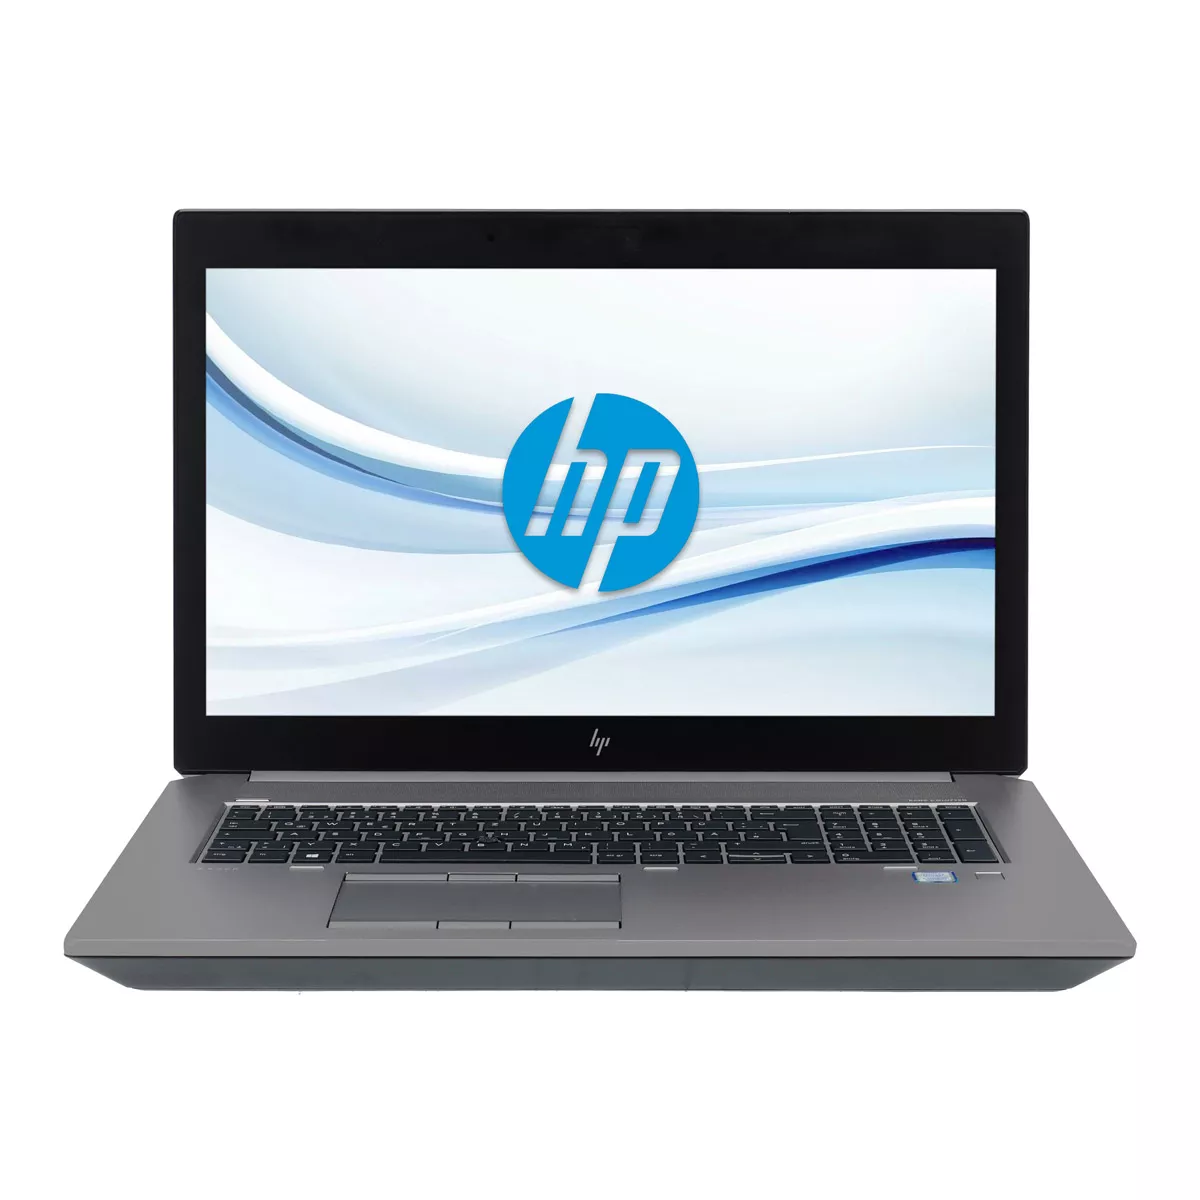 HP ZBook 17 G5 Core i7 8850H nVidia Quadro P5200M Full-HD 32 GB DDR4 500 GB M.2 SSD Webcam A+